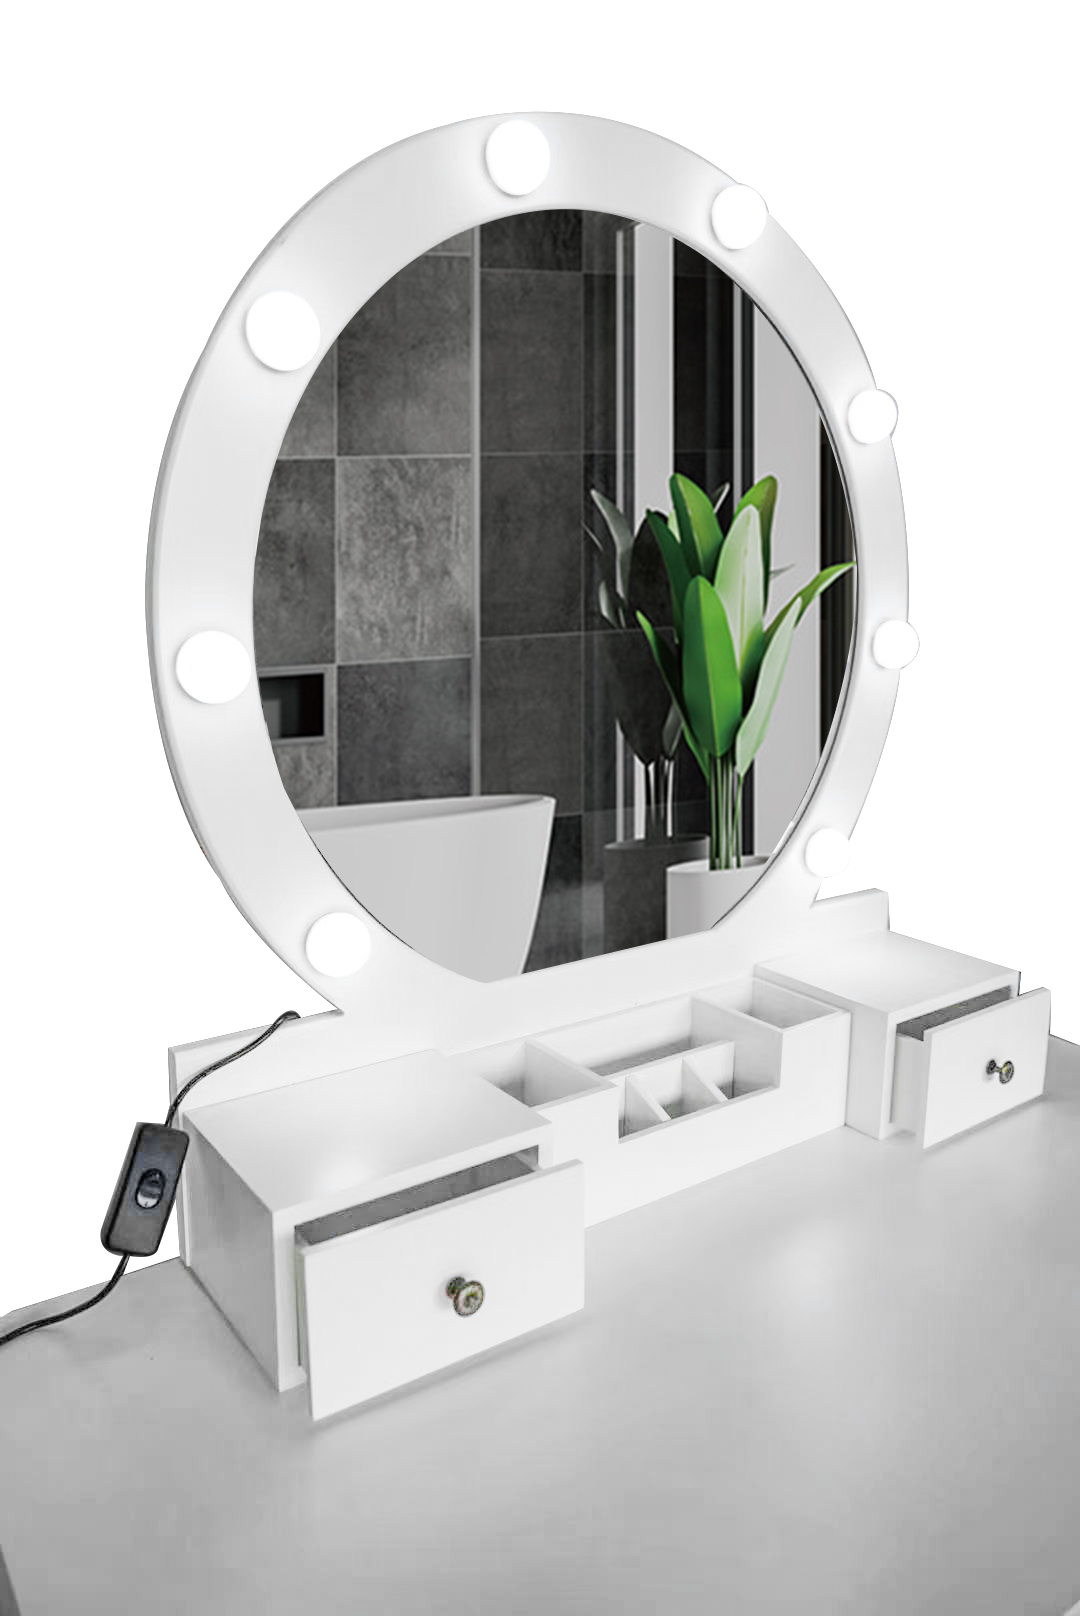 Table de maquillage de style en bois moderne avec miroir bon prix avec interrupteur d'éclairage meuble-lavabo de chambre